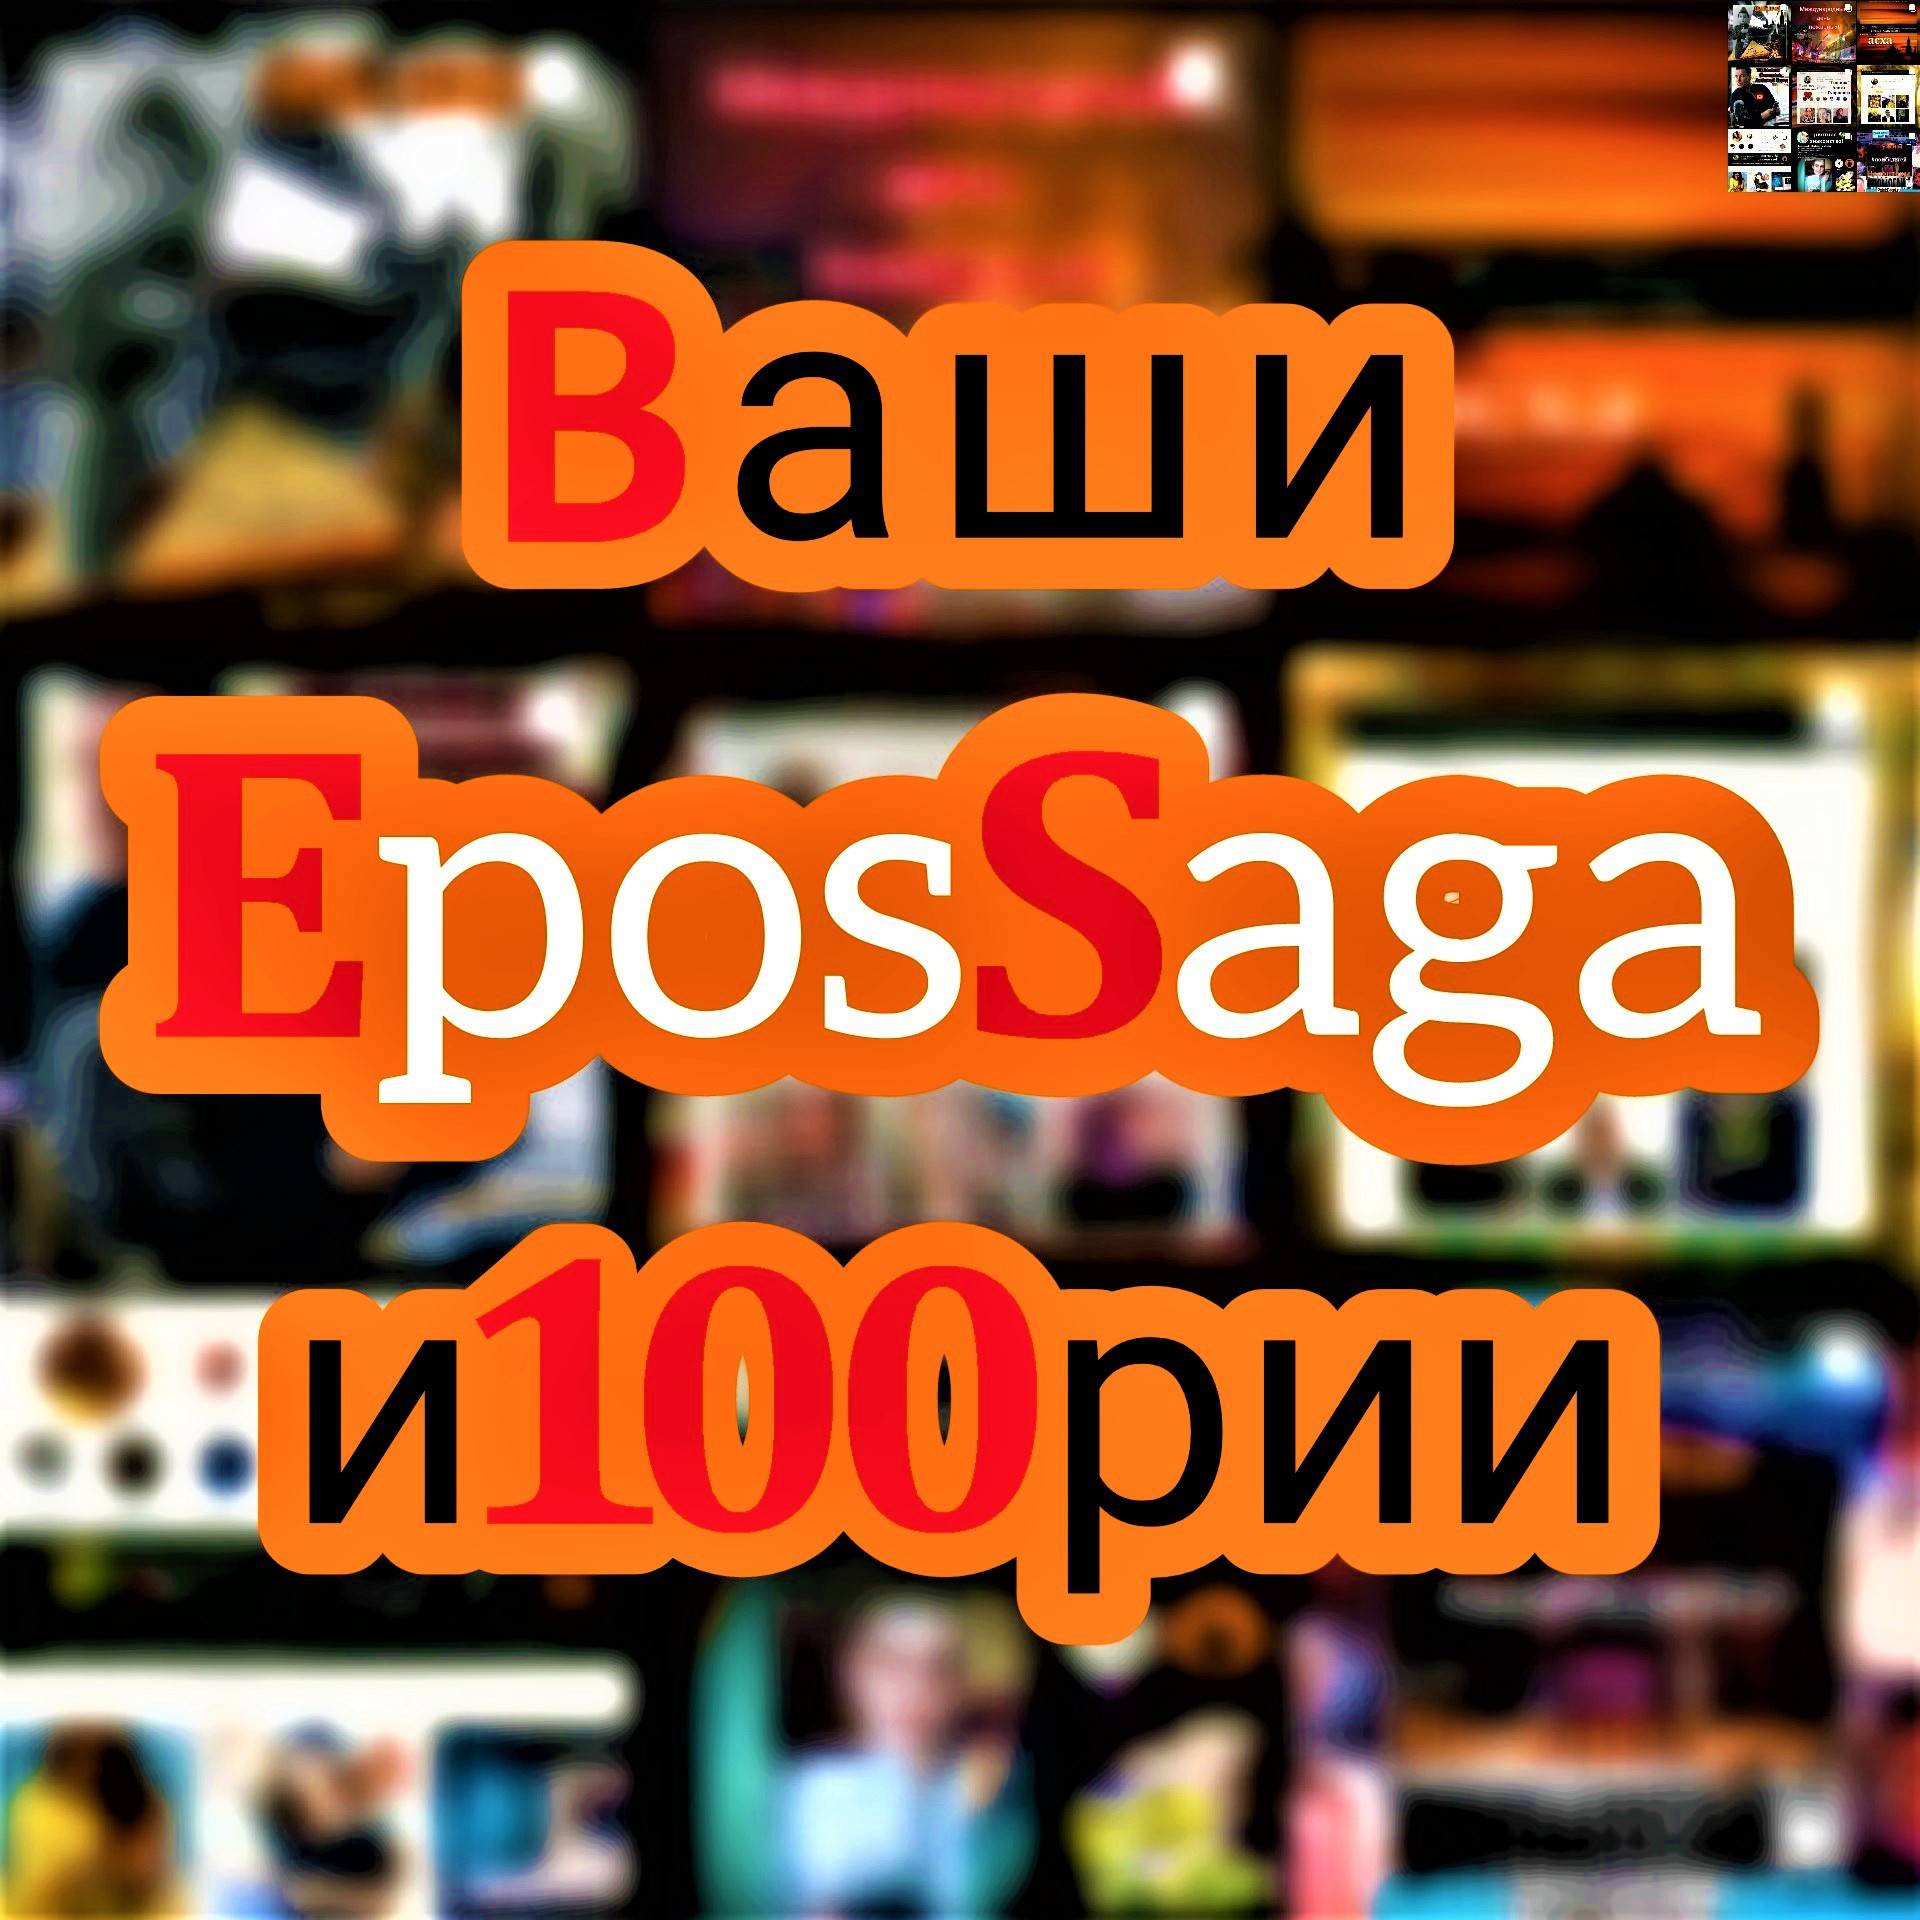 Иконка канала EposSaga Ваши и100рии